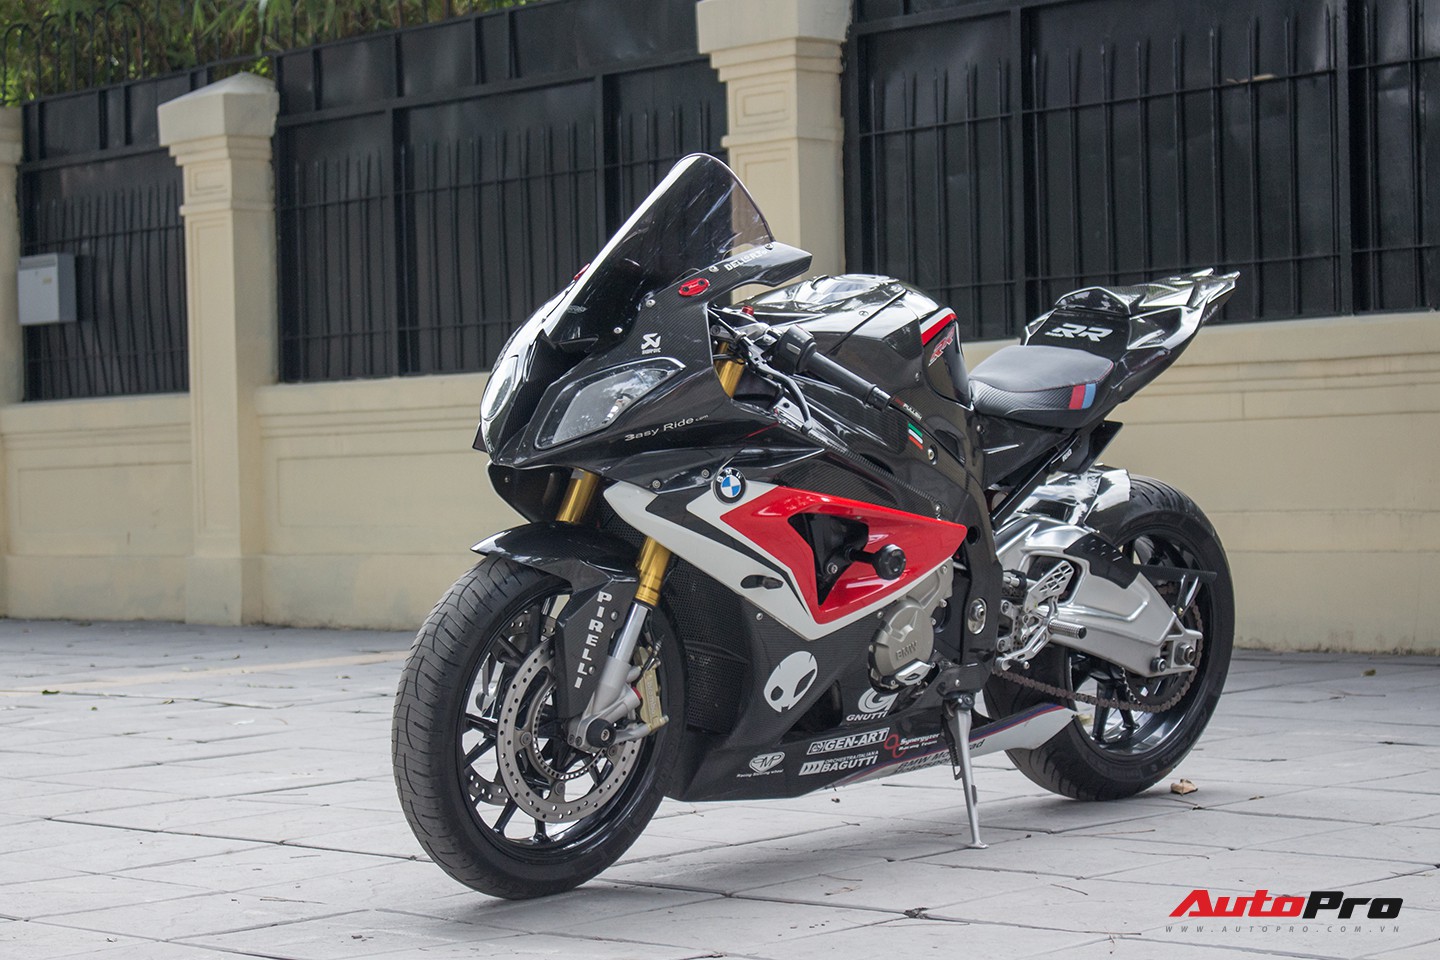 Siêu moto BMW S1000RR 2020 chính thức được ra mắt tại Việt Nam